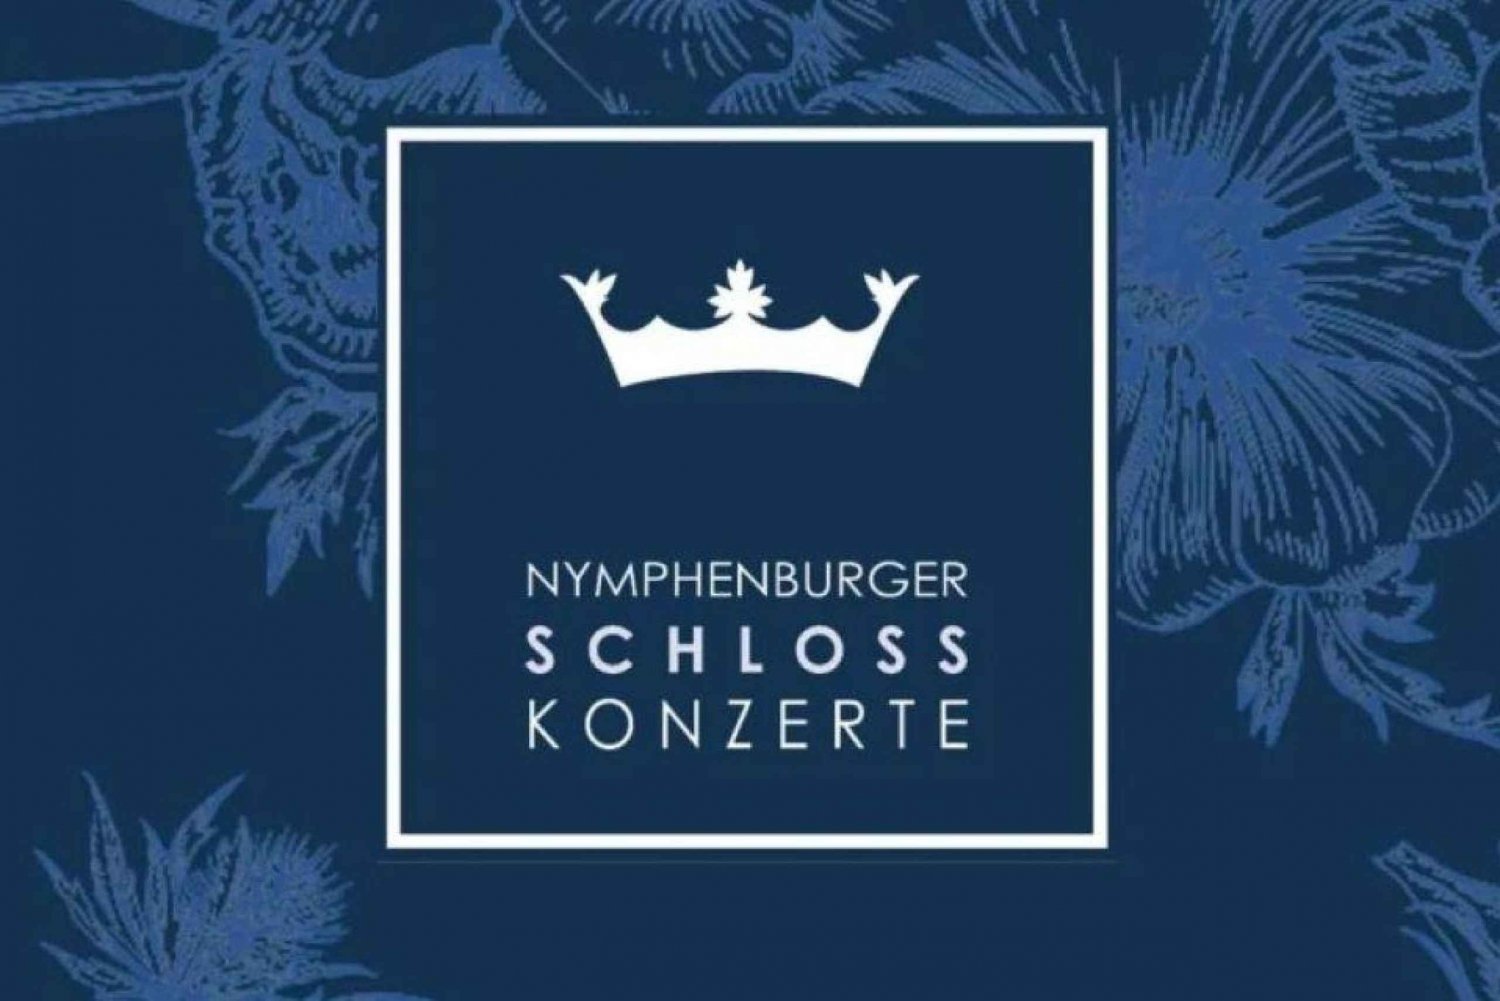 München: Konsert i Hubertussalen på Nymphenburgslottet